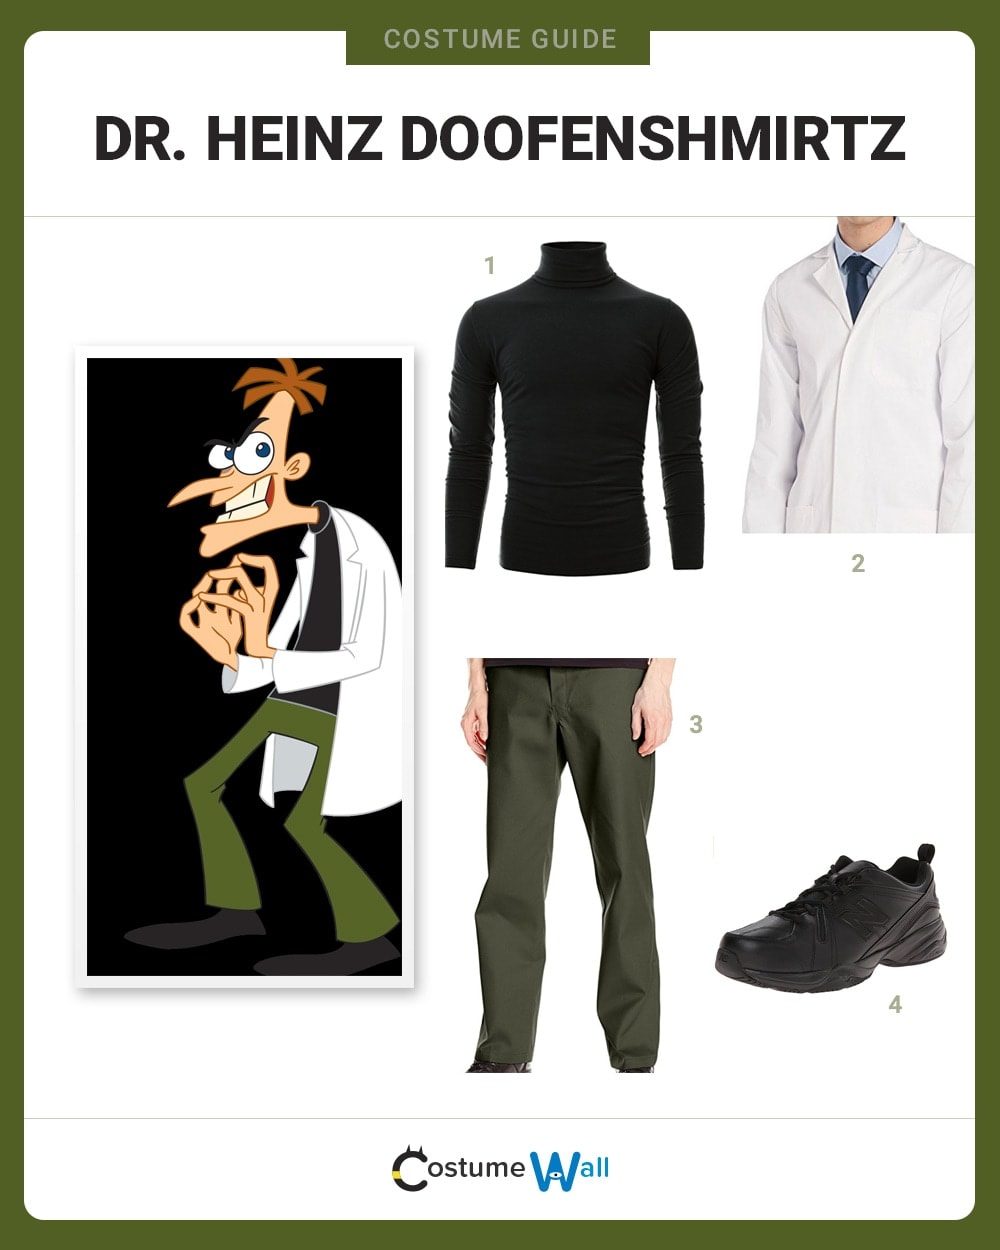 Doofenshmirtz costume